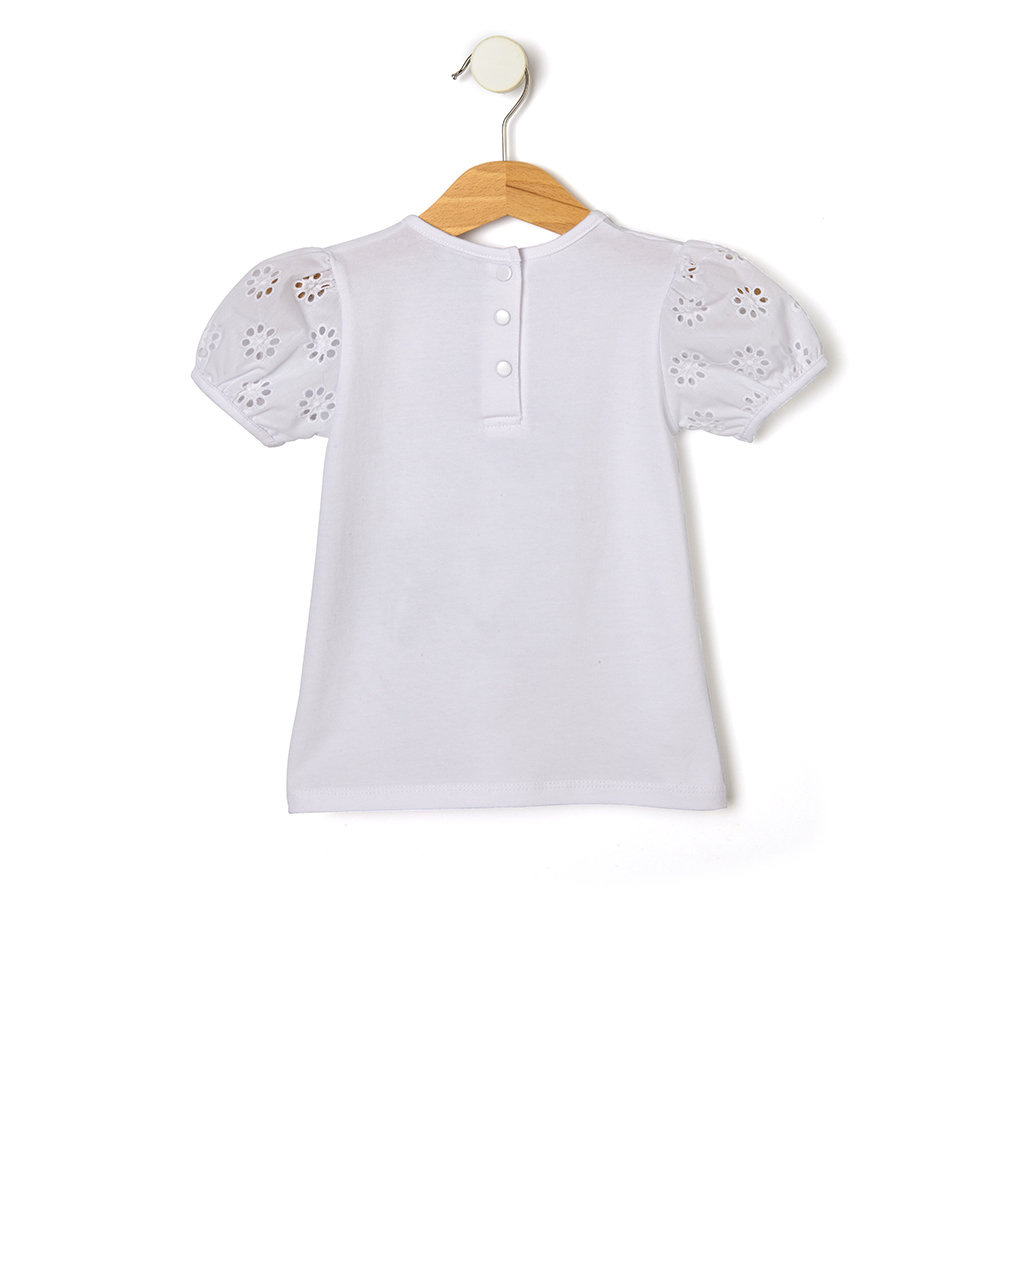 T-shirt jersey λευκό με στάμπα minnie για κορίτσι - Prénatal